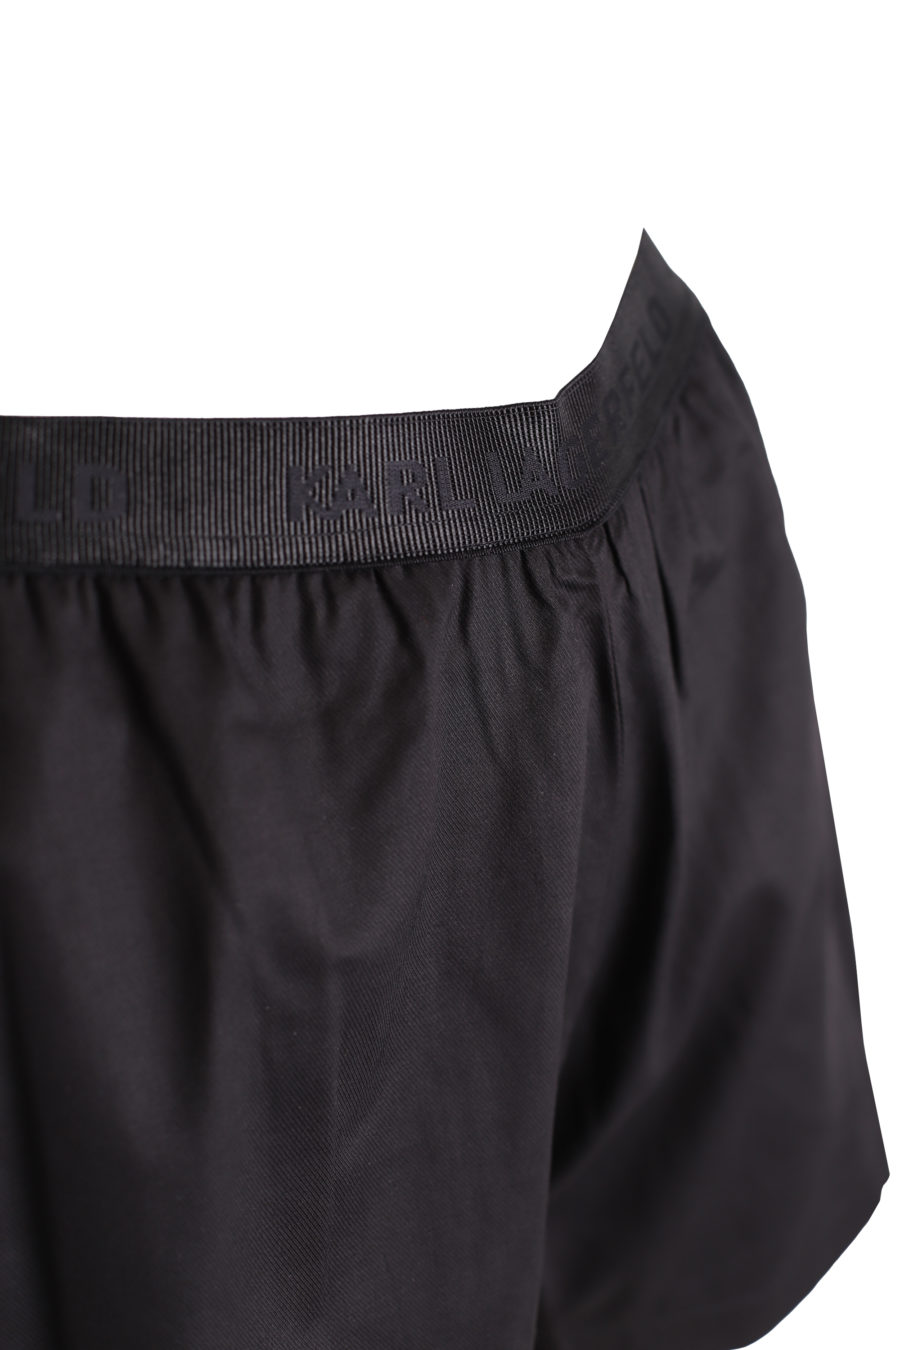 Conjunto pijama con pantalones cortos de color negro - f52c40e23b6bbb24499a1f3cc8288e9bcb15e3f5